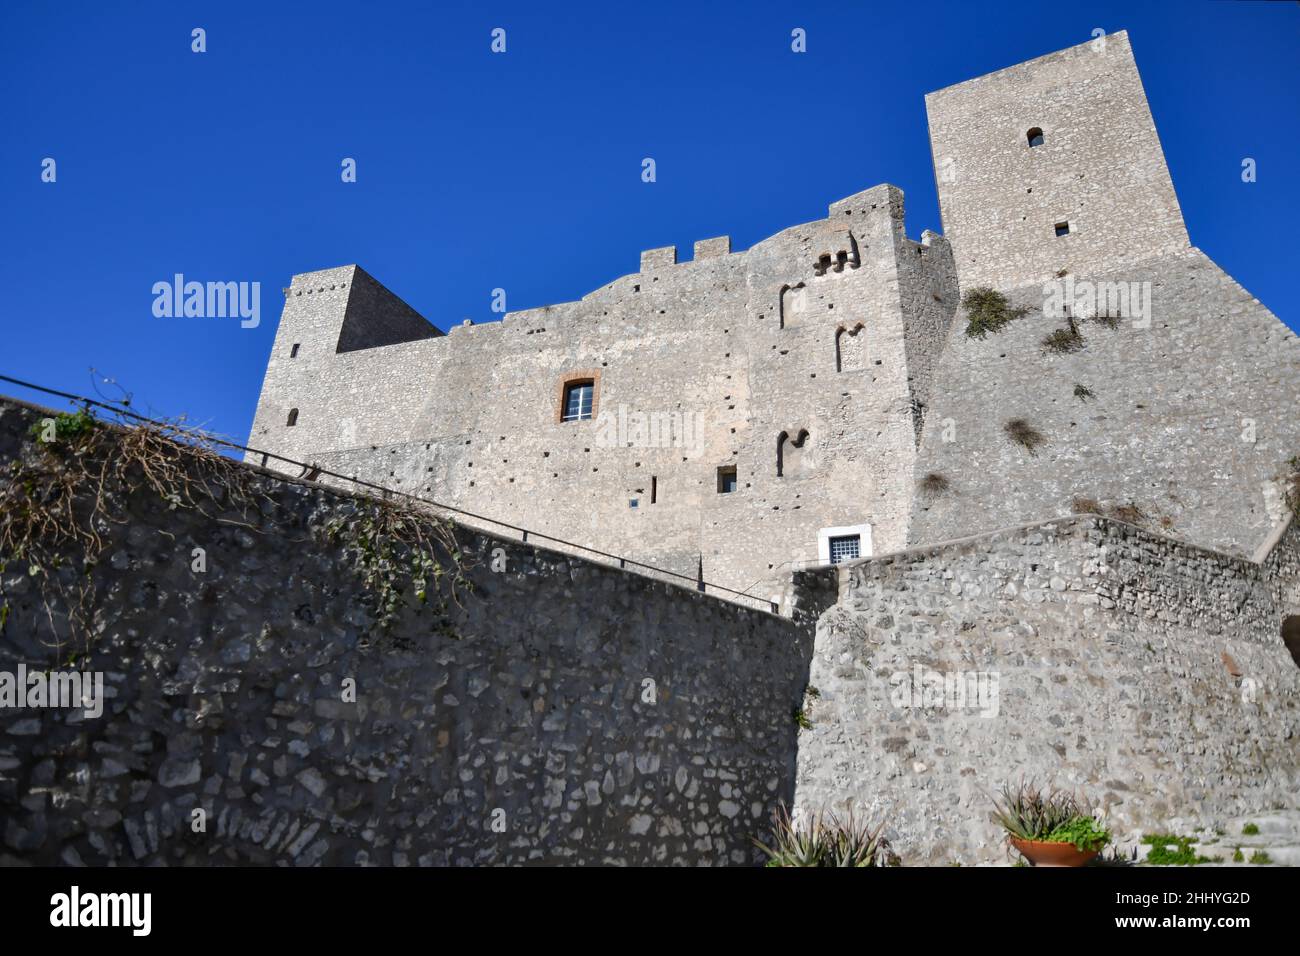 Les murs fortifiés du château d'Itri, une ville historique de la région du Latium, en Italie. Banque D'Images